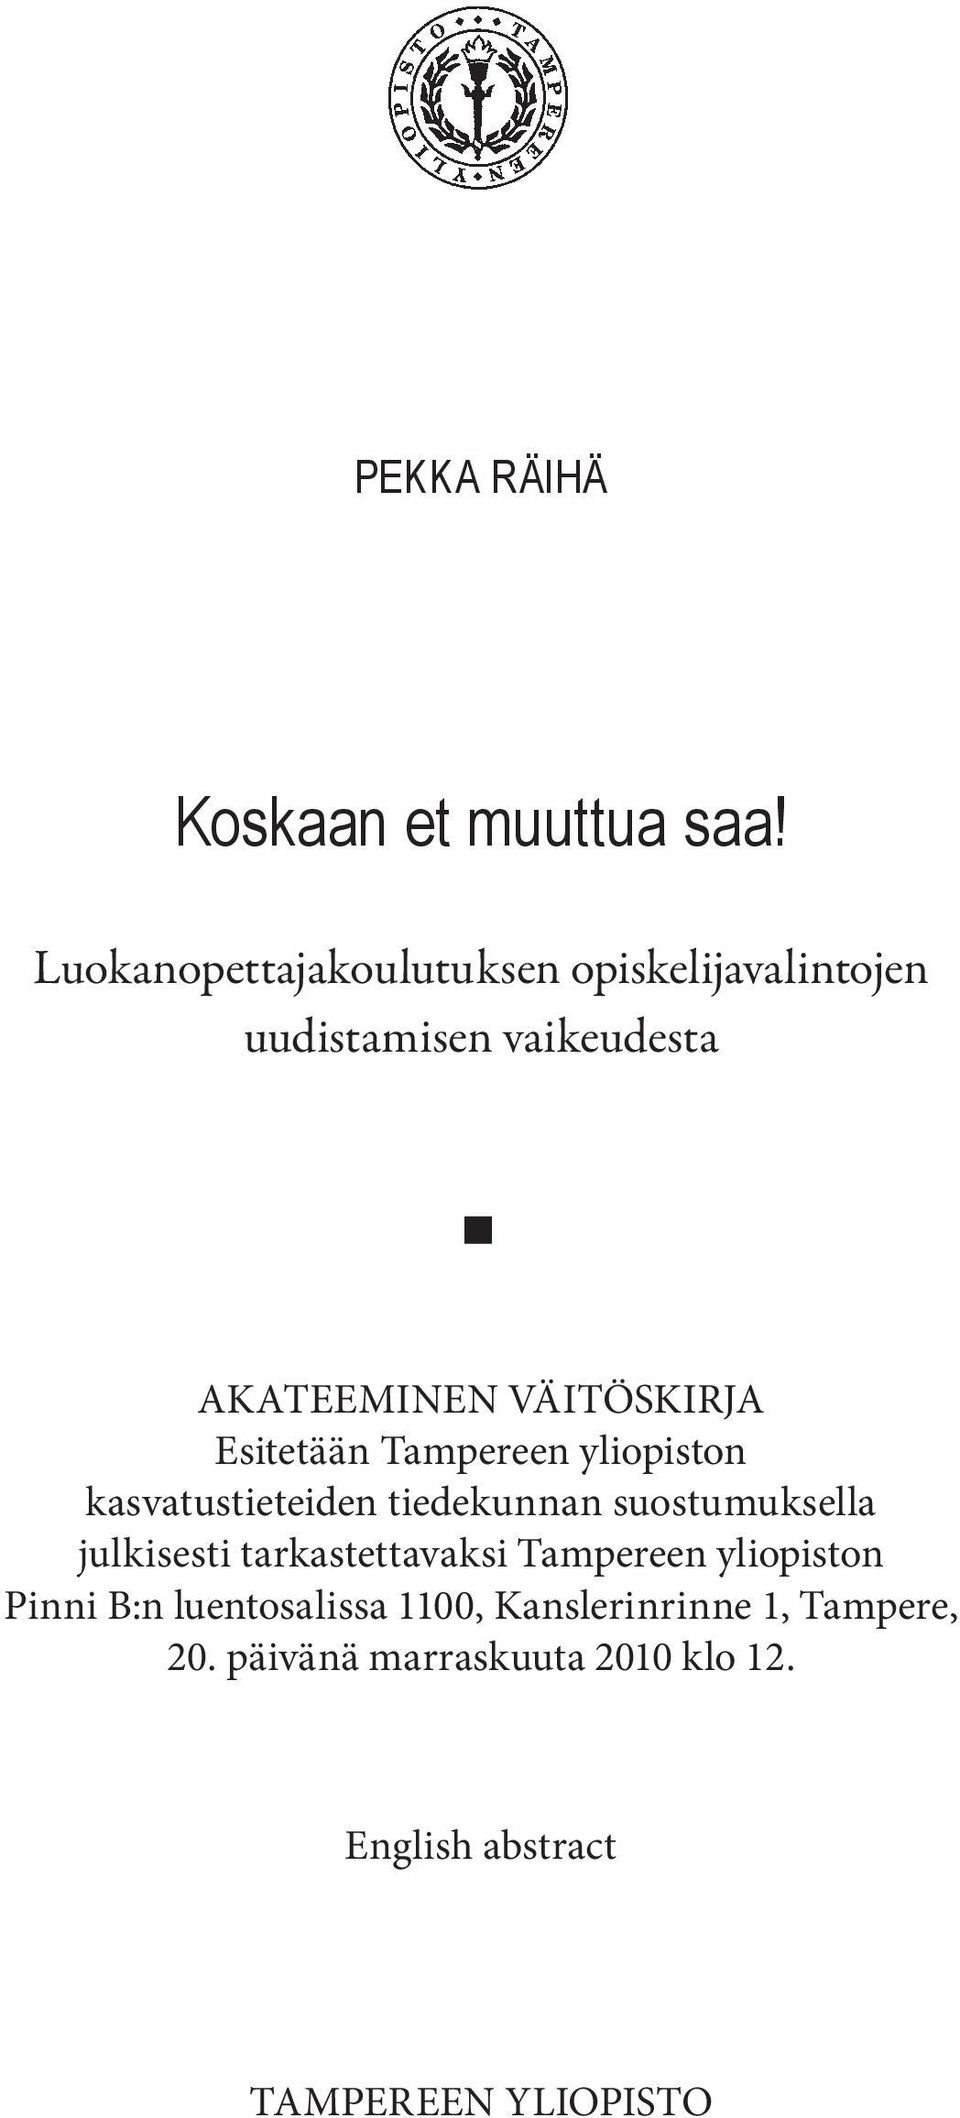 Esitetään Tampereen yliopiston kasvatustieteiden tiedekunnan suostumuksella julkisesti